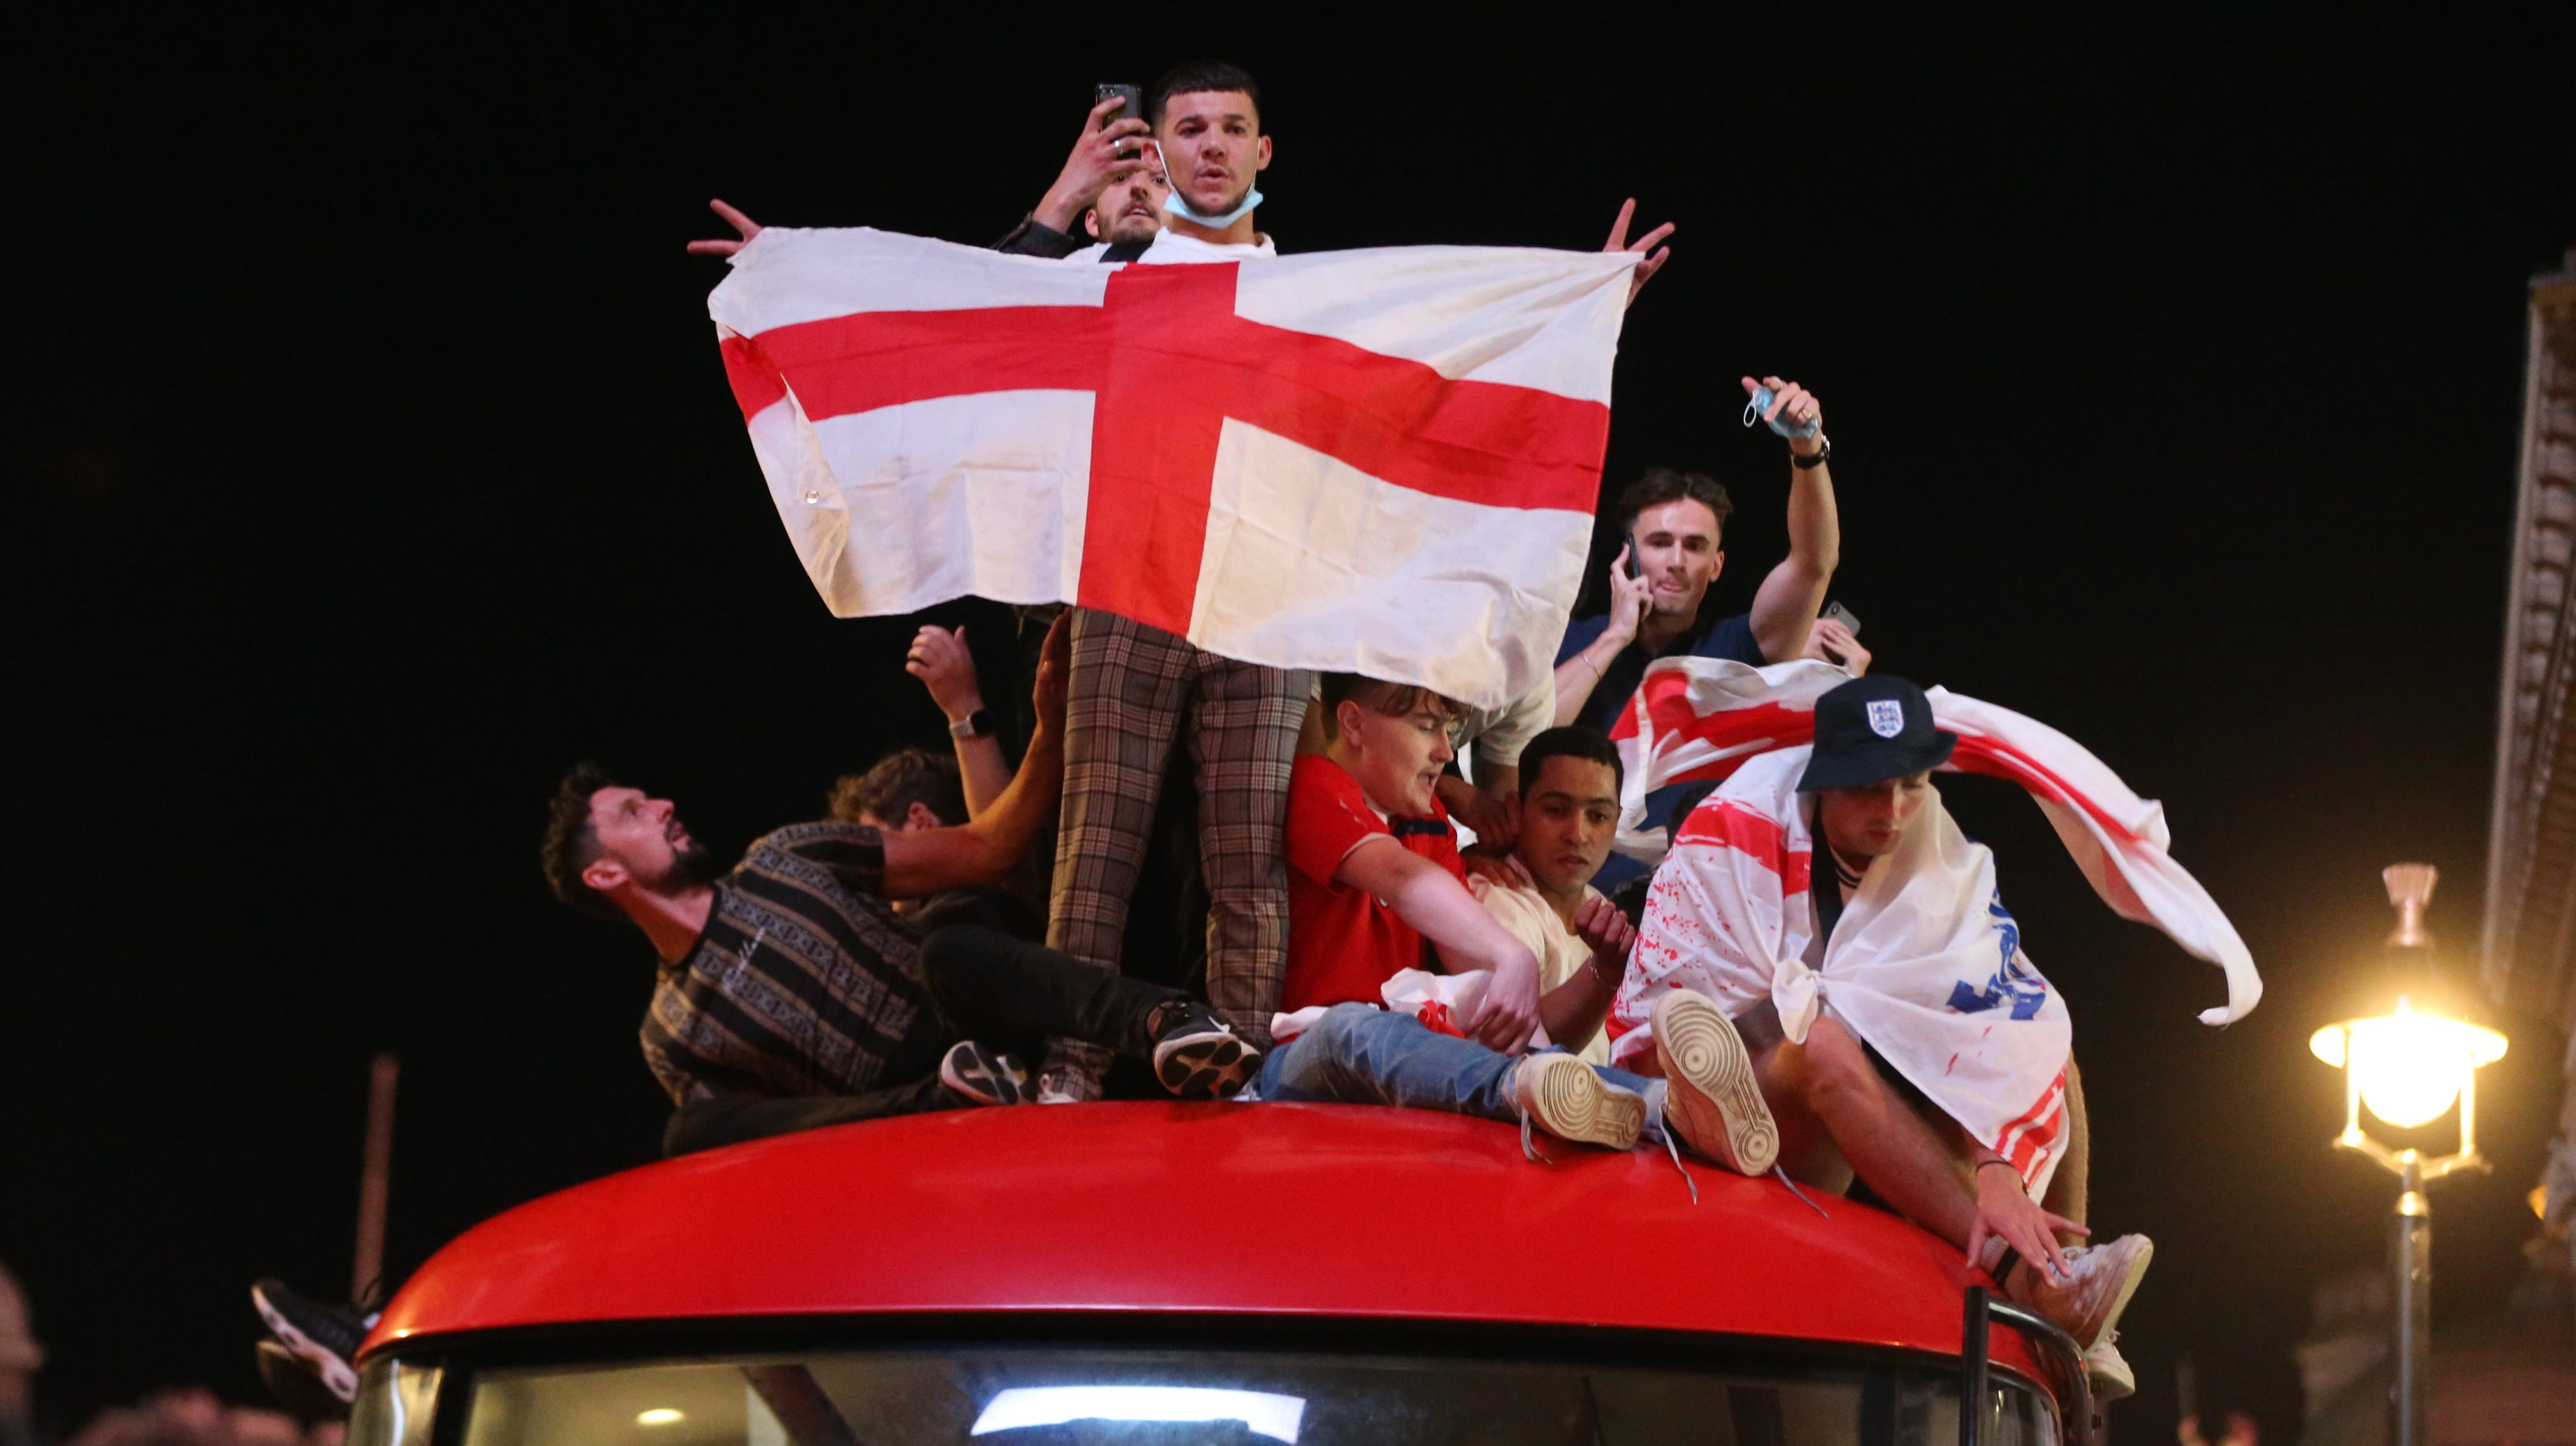 England beat Denmark 2-1 to face Italy in Euro 2020 final